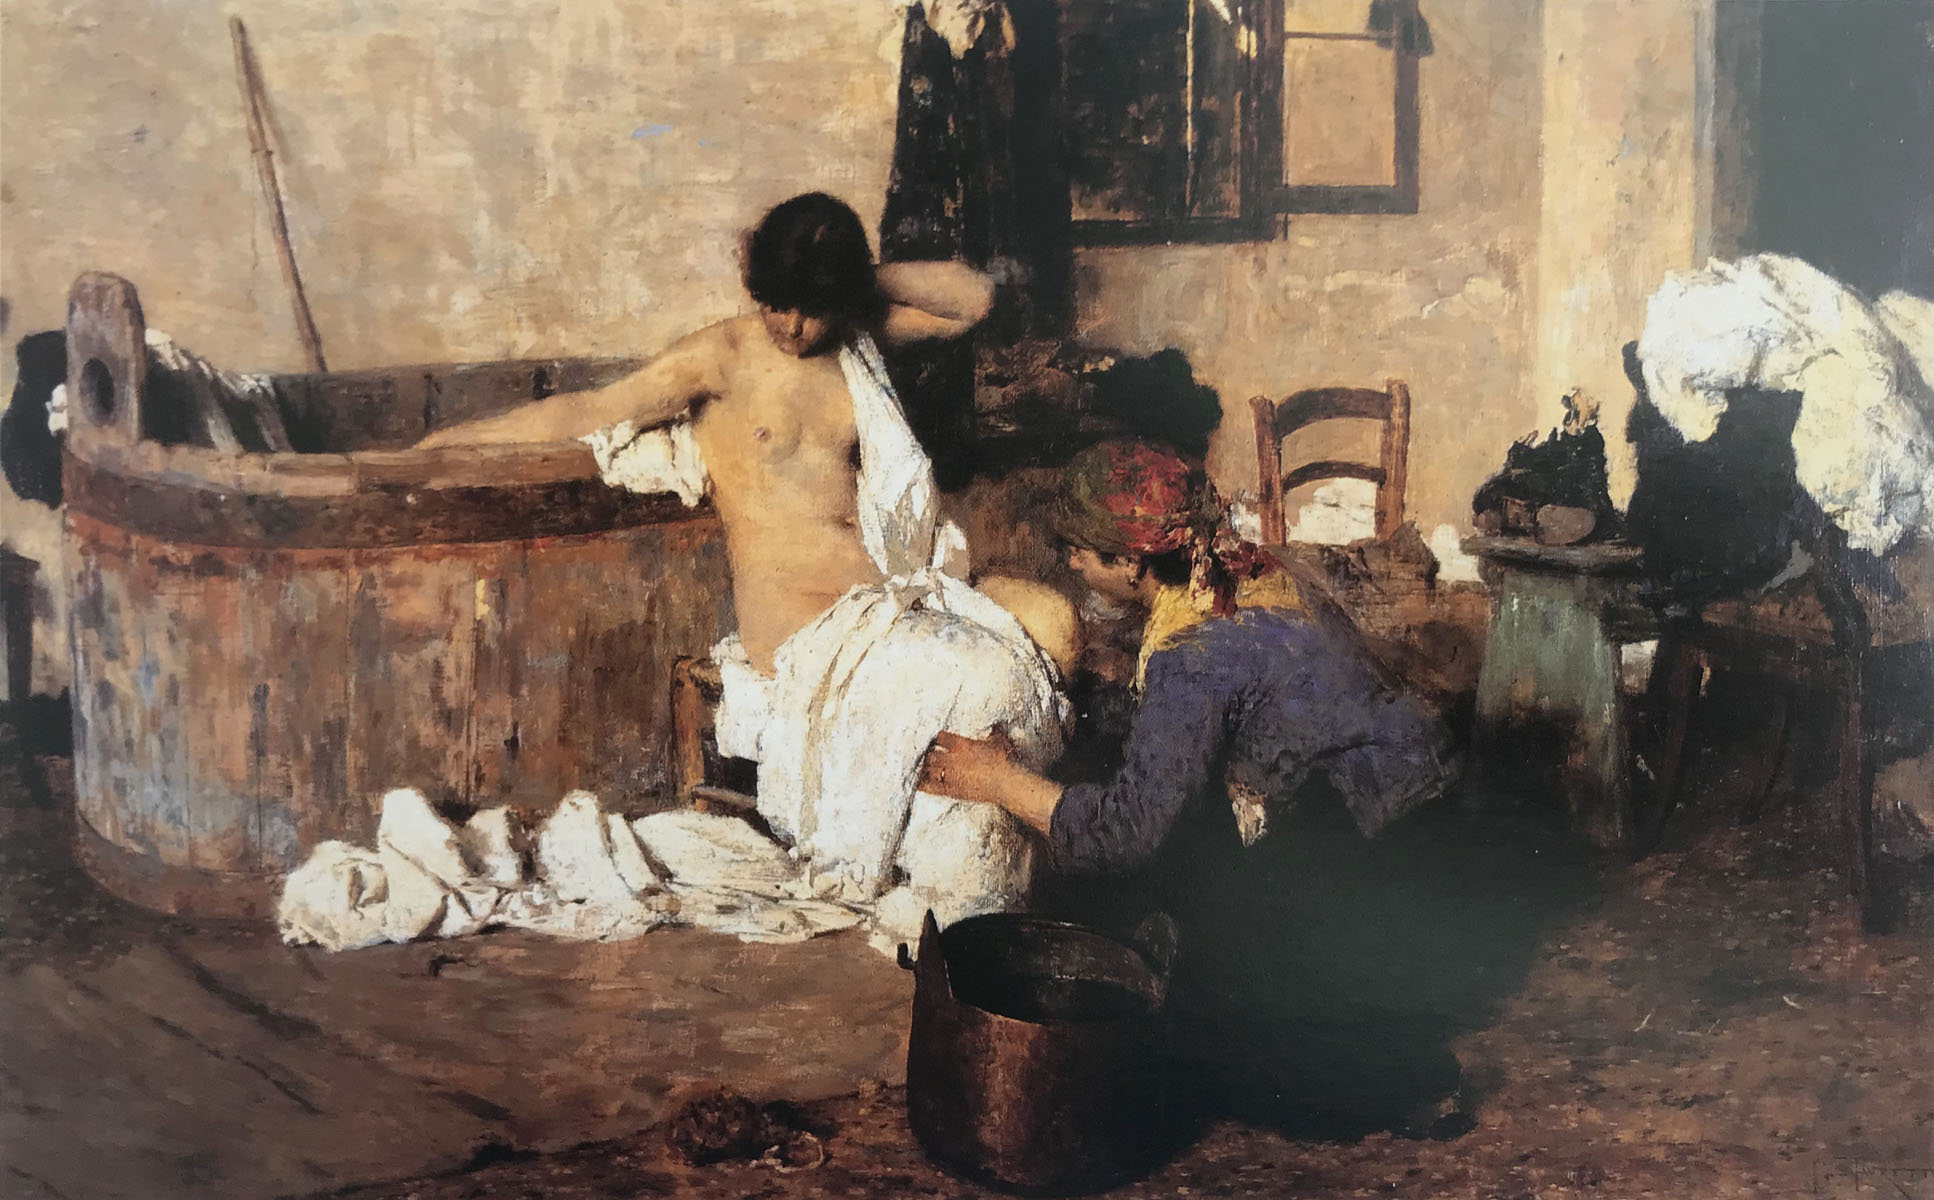 Dopo il bagno - 1884  Olio su tela, 55.5x95  - Galleria Nazionale d'Arte Moderna, Roma